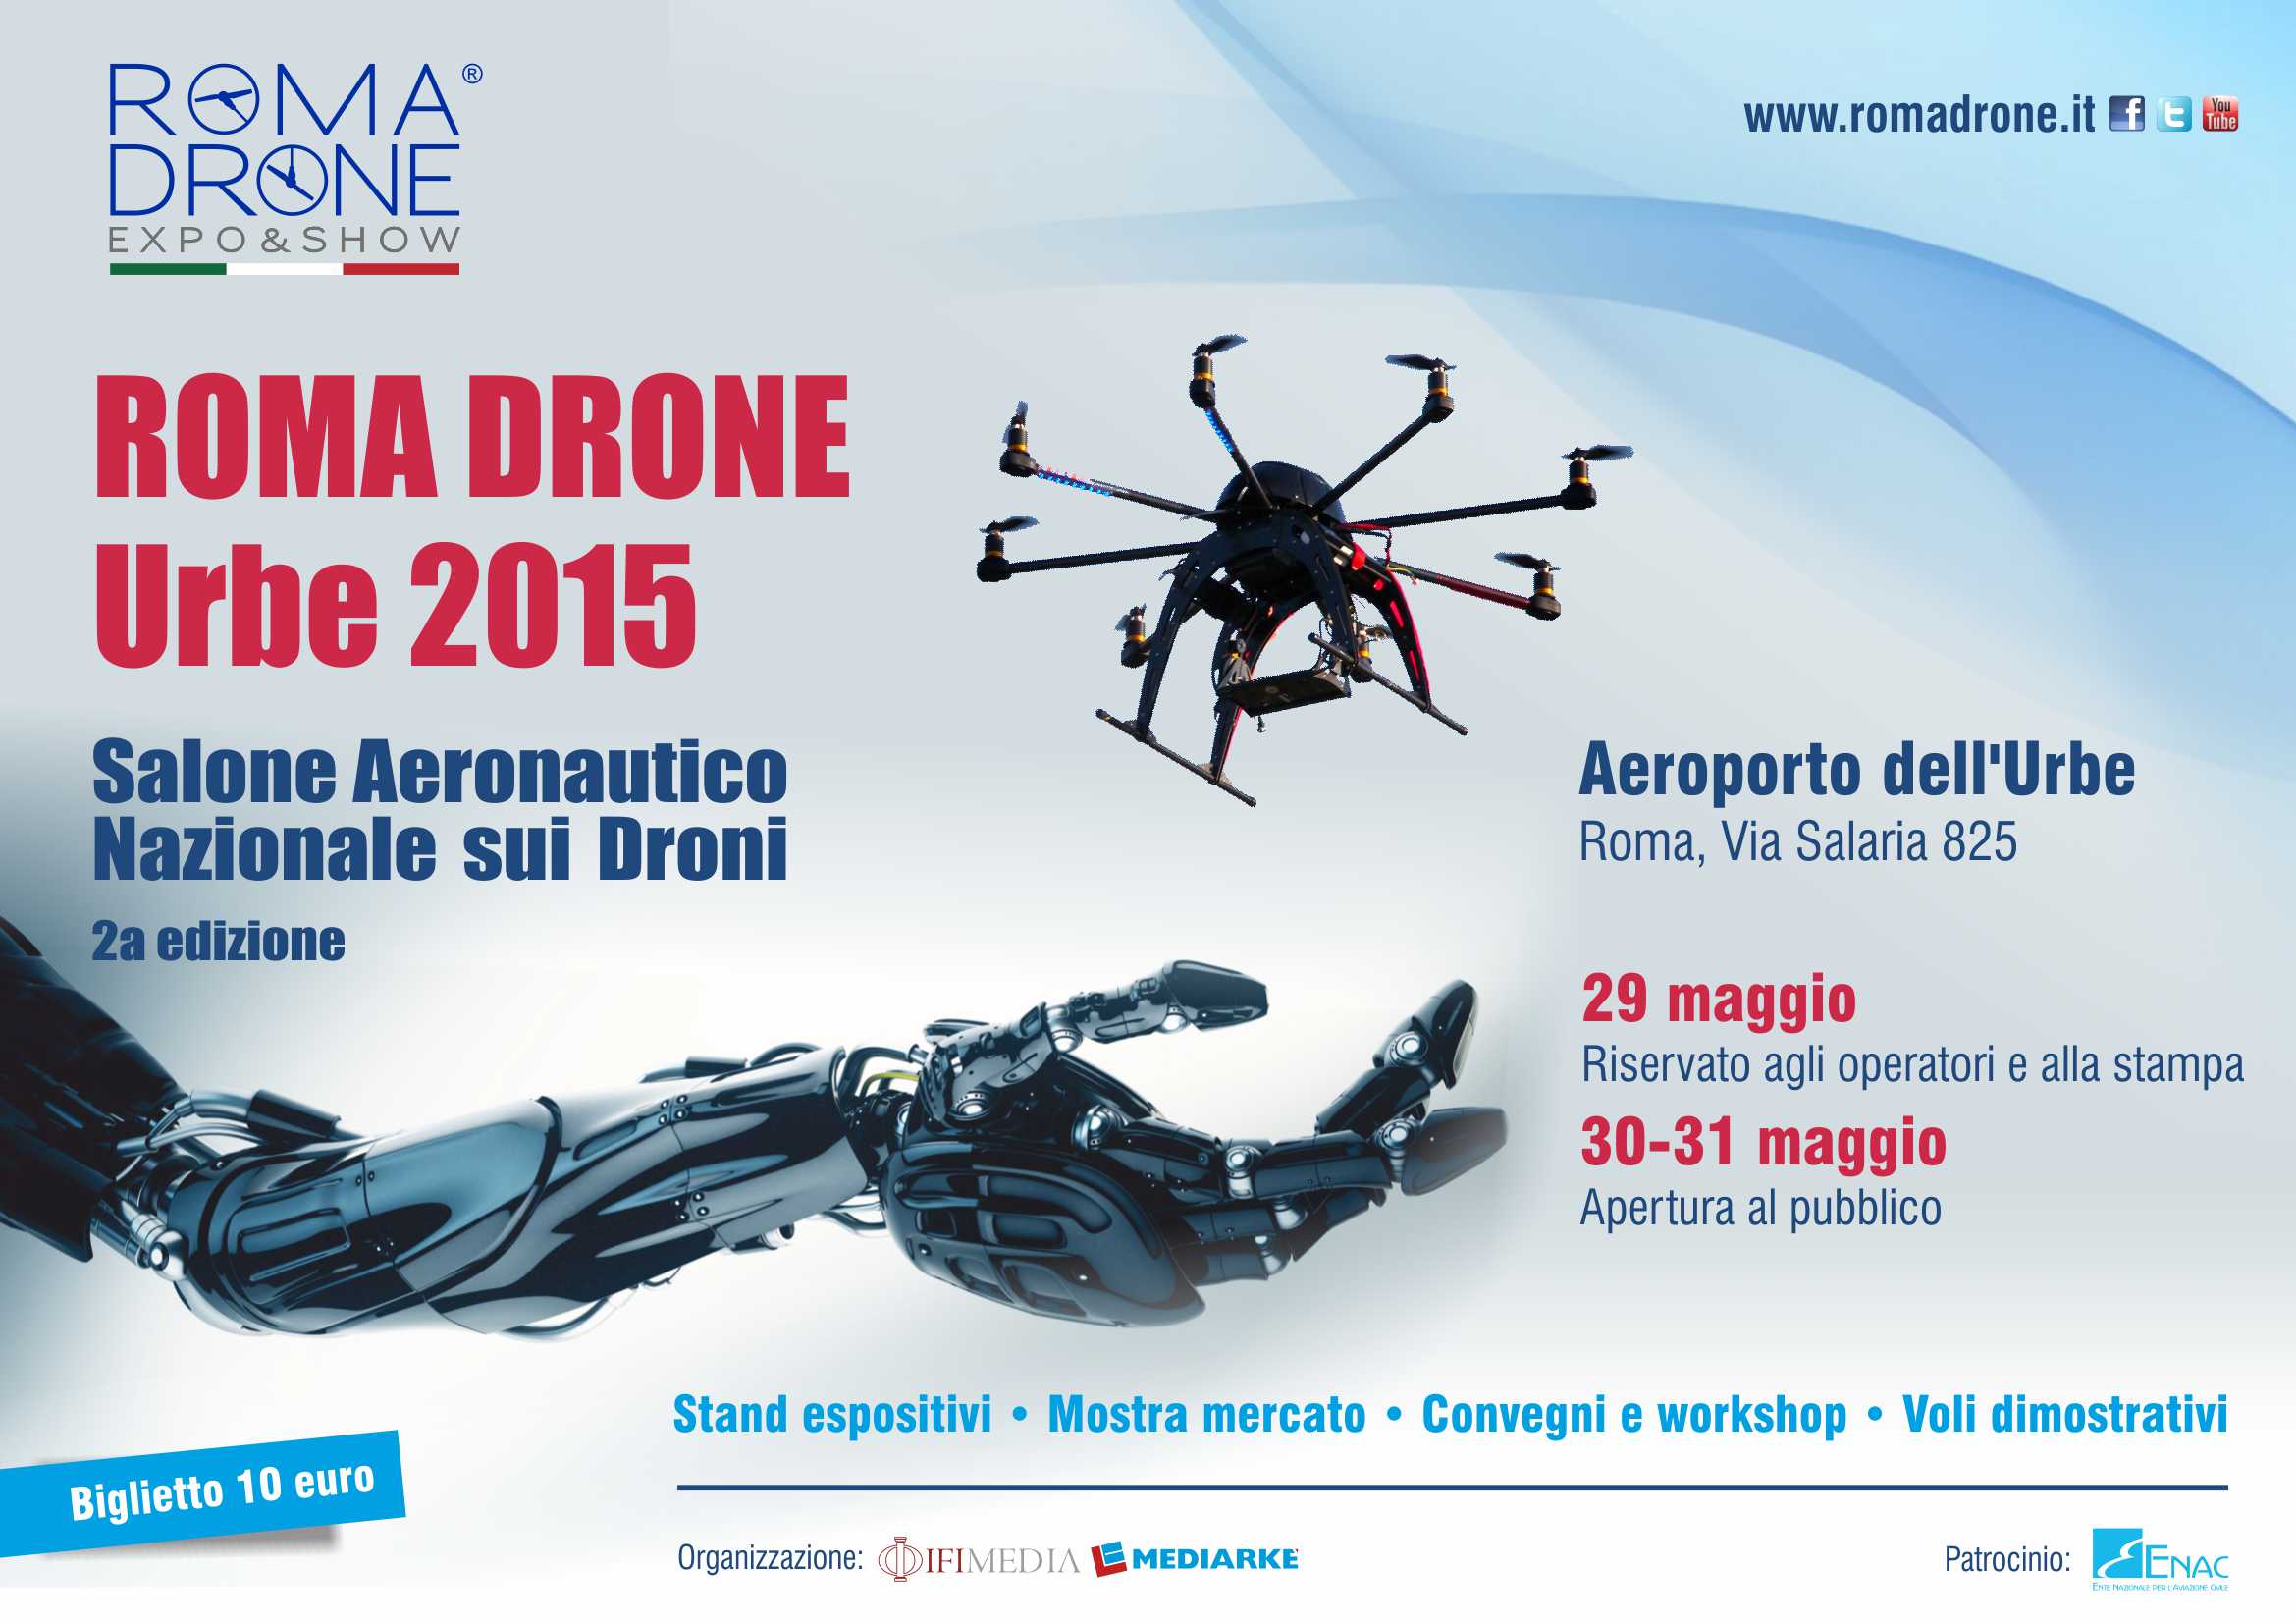 Droni: Conto alla rovescia per il grande Expo di Roma 2016 all’aeroporto dell’Urbe